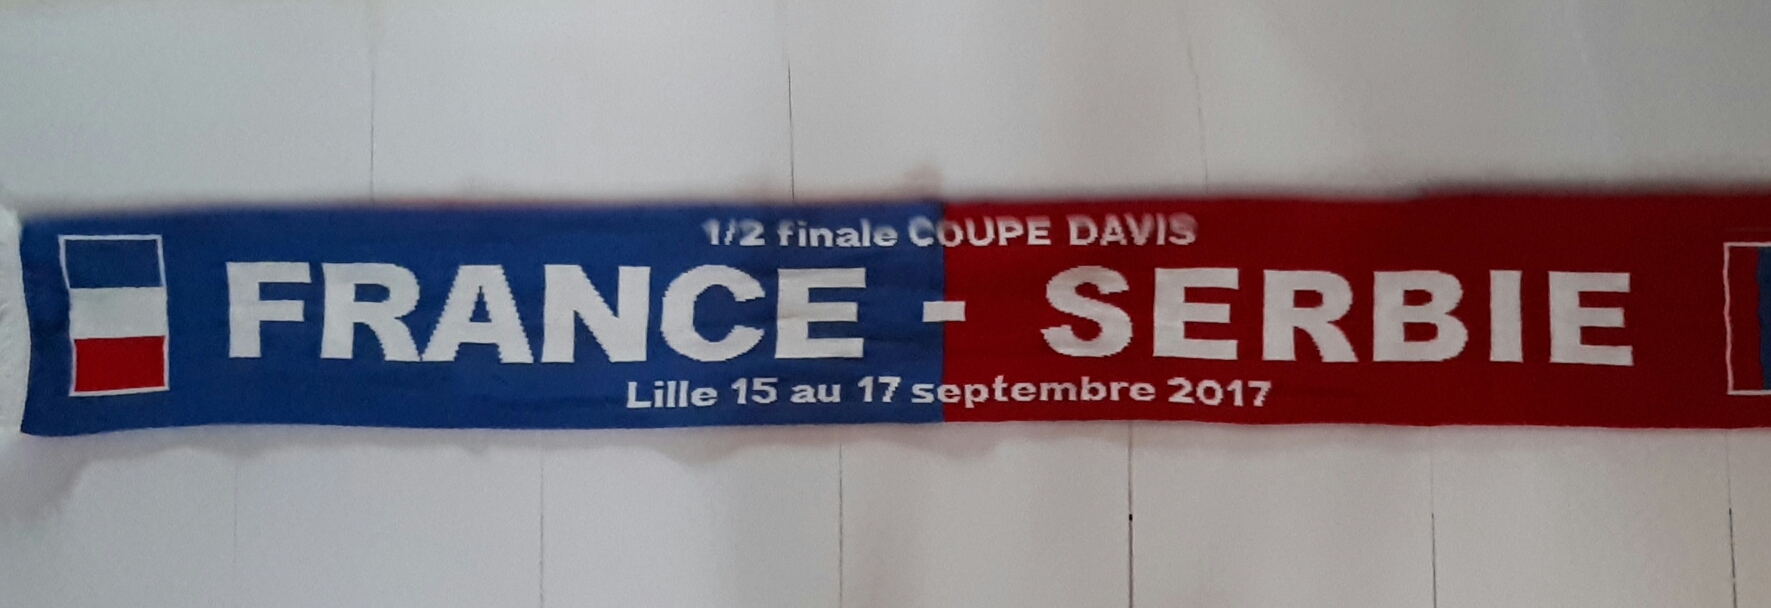 Echarpe 1/2 finale Coupe Davis LILLE 2017